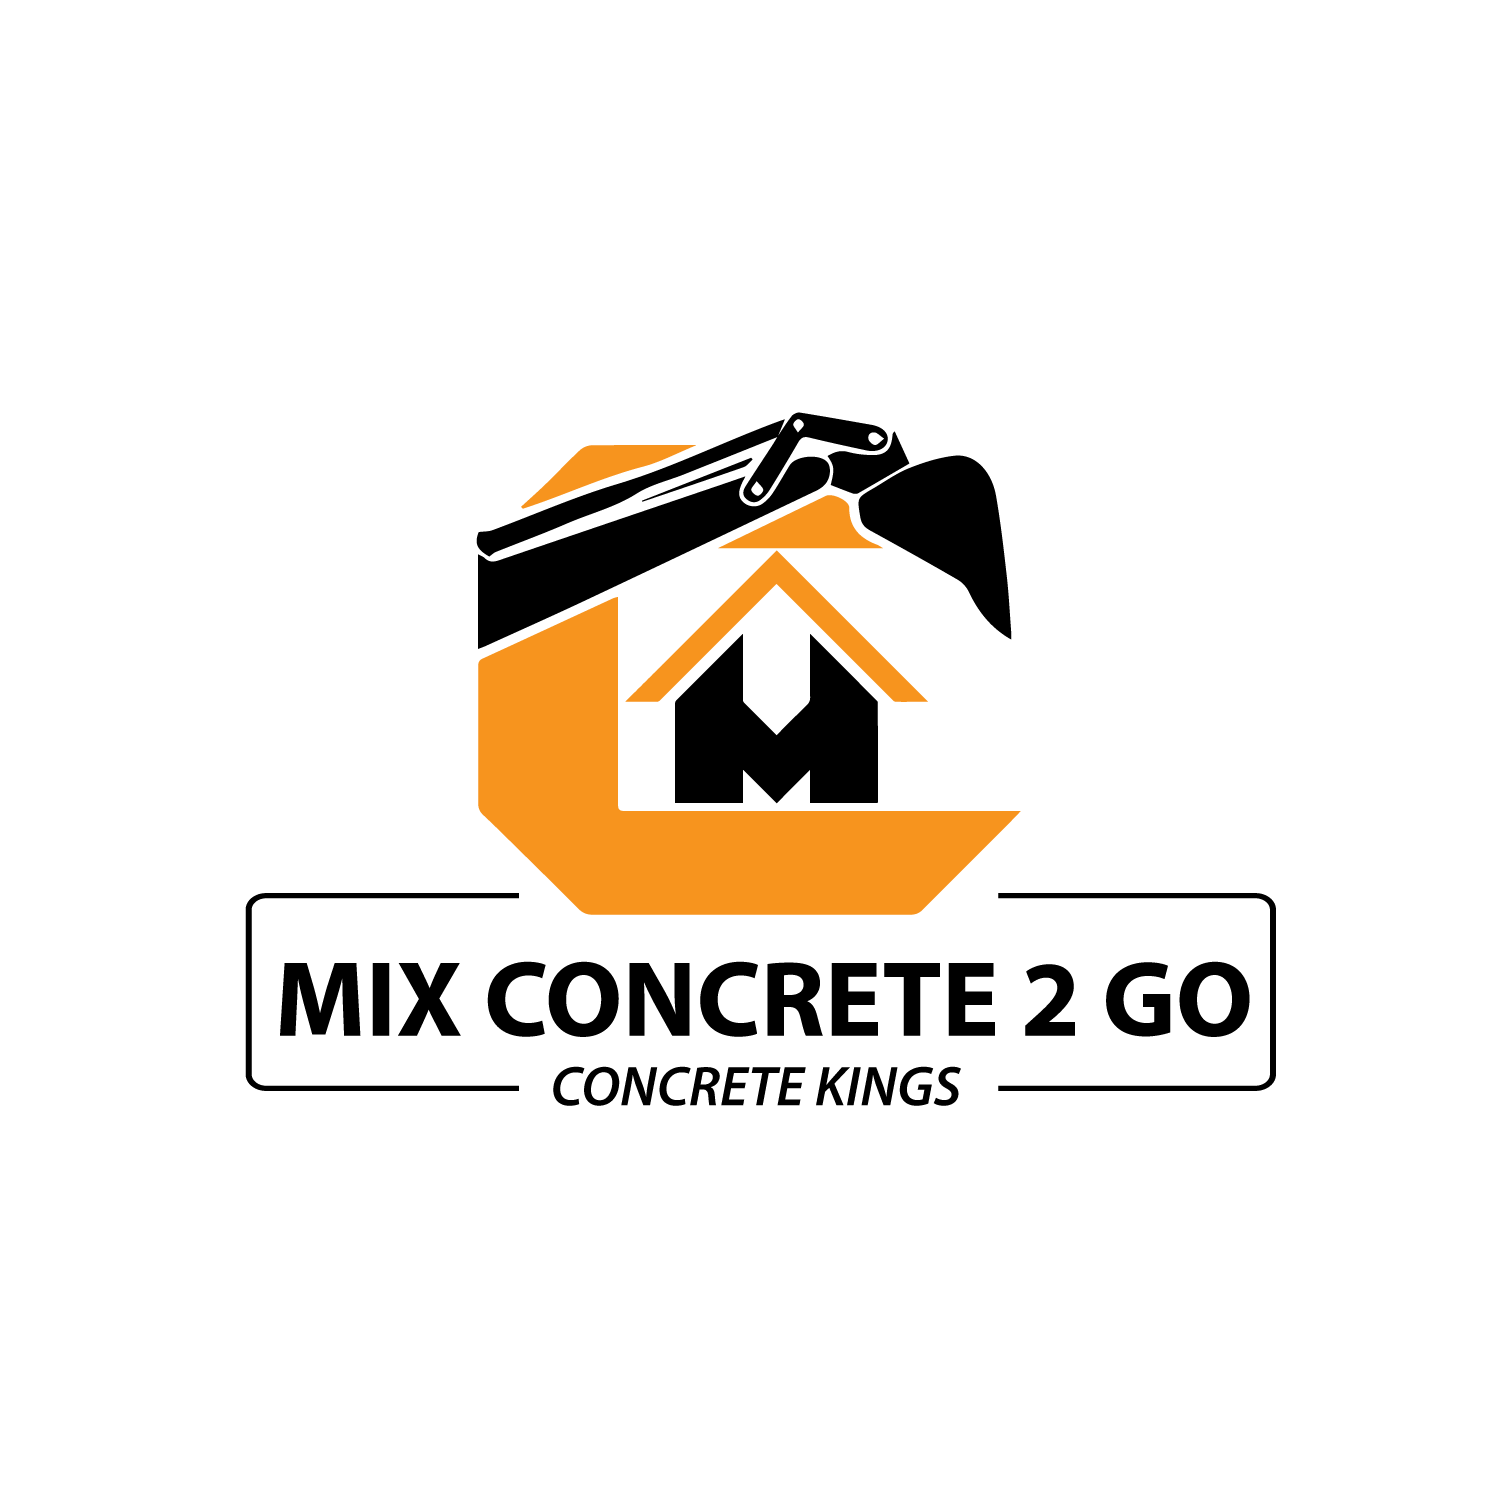 Mix Concrete 2 Go.2 - Sales Funnel Development and Implementation